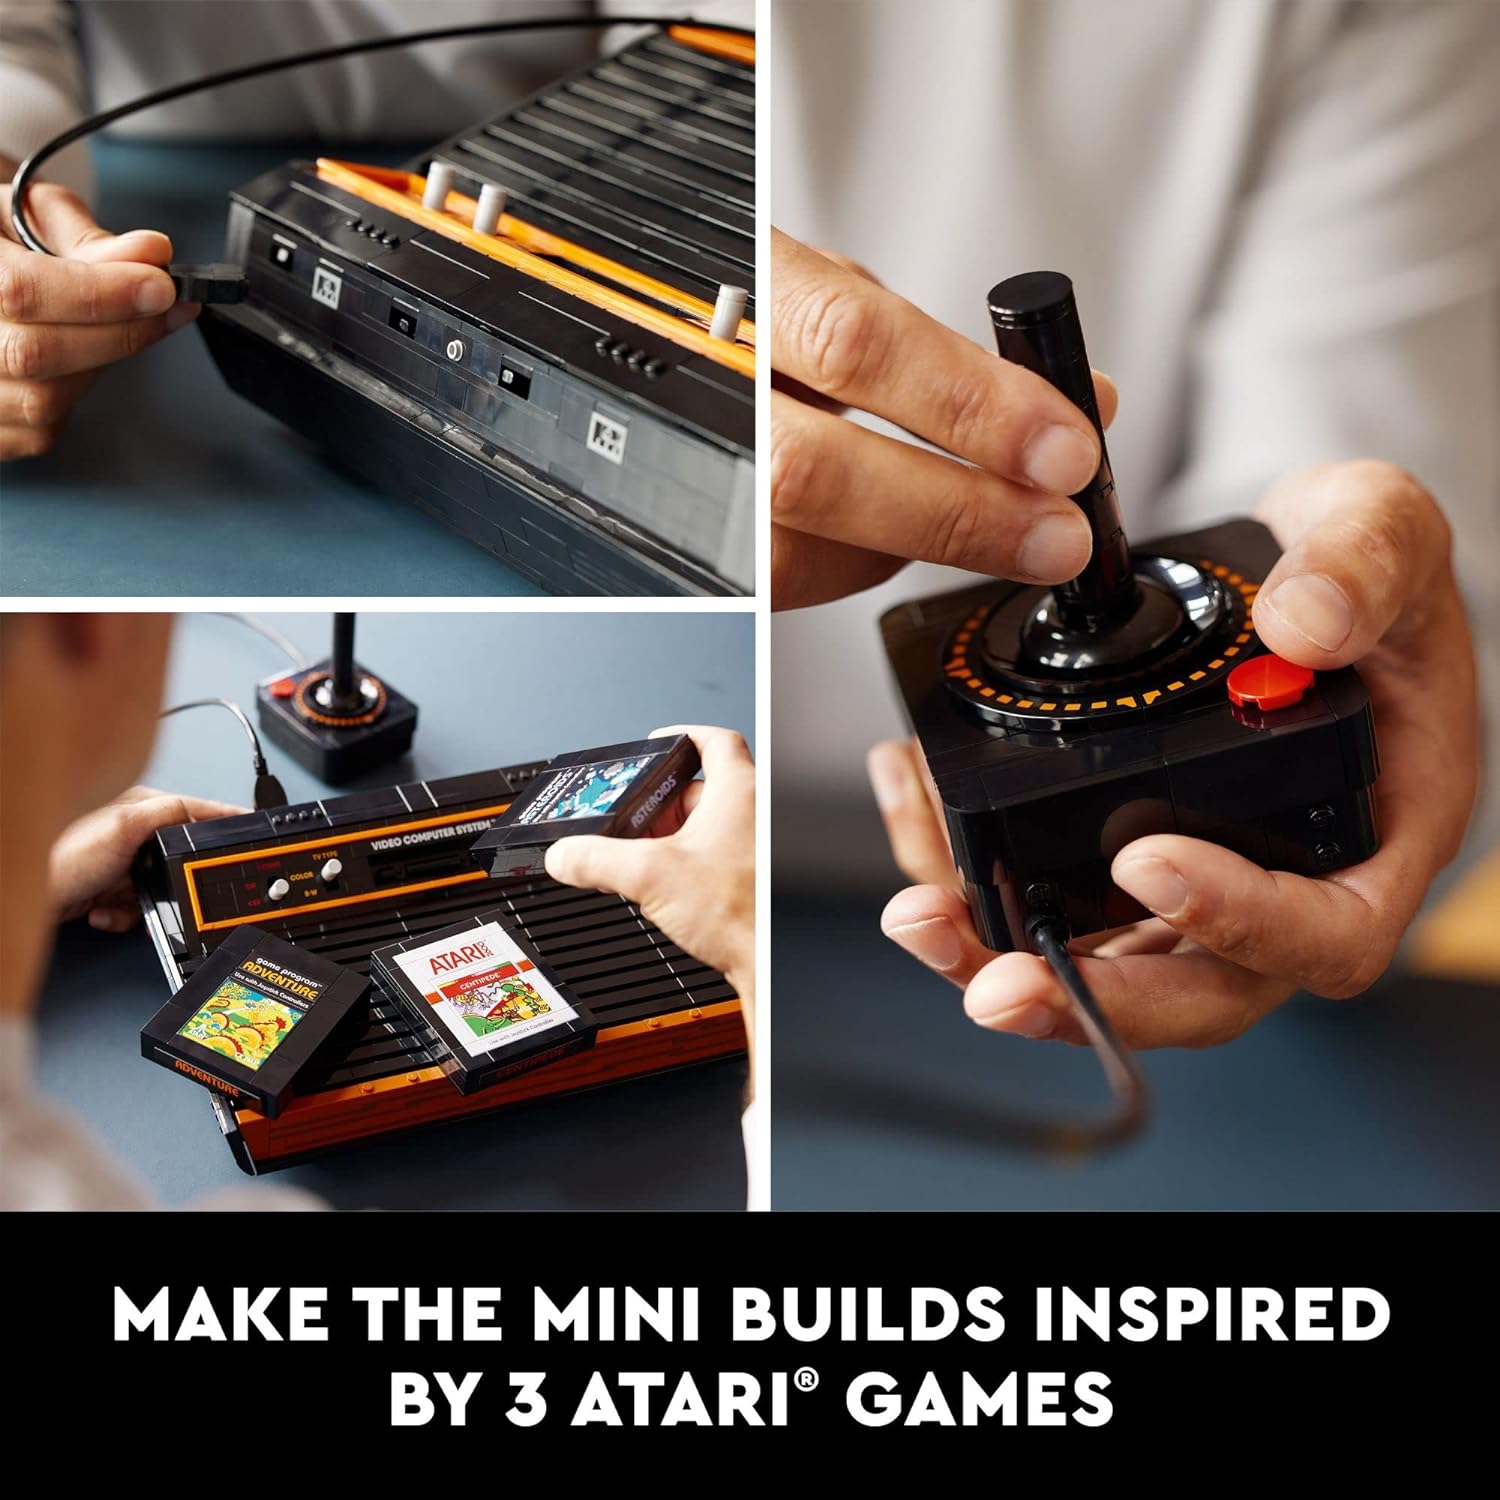 مجموعة بناء LEGO 10306 Icons Atari 2600 10306 - وحدة تحكم ألعاب فيديو قديمة ونسخ طبق الأصل من خرطوشة الألعاب، تتميز بمجسم صغير وعصا تحكم، هدية حنين إلى الثمانينيات للاعبين والكبار